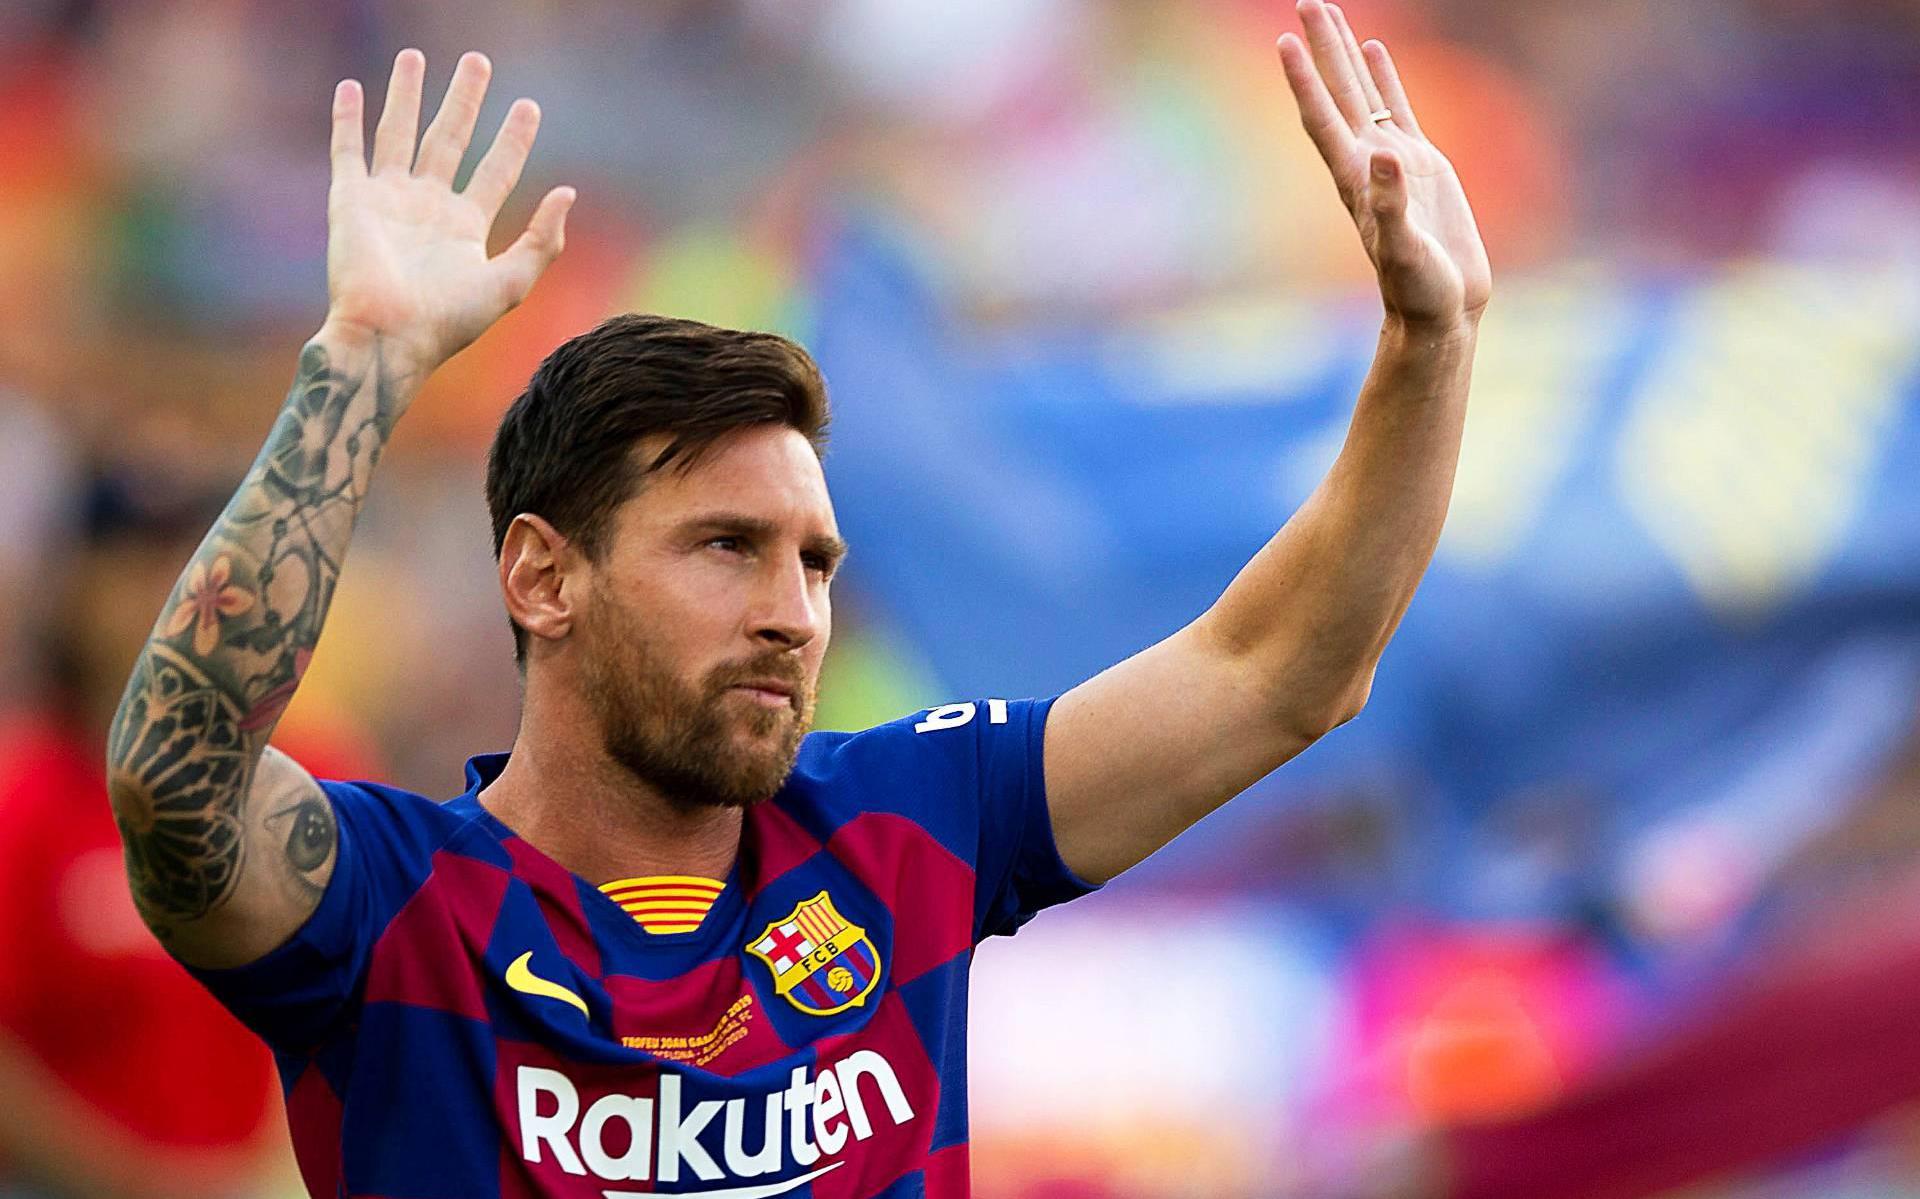 Seizoen Tactiel gevoel Tandheelkundig Messi showt roze tenue FC Barcelona - Leeuwarder Courant